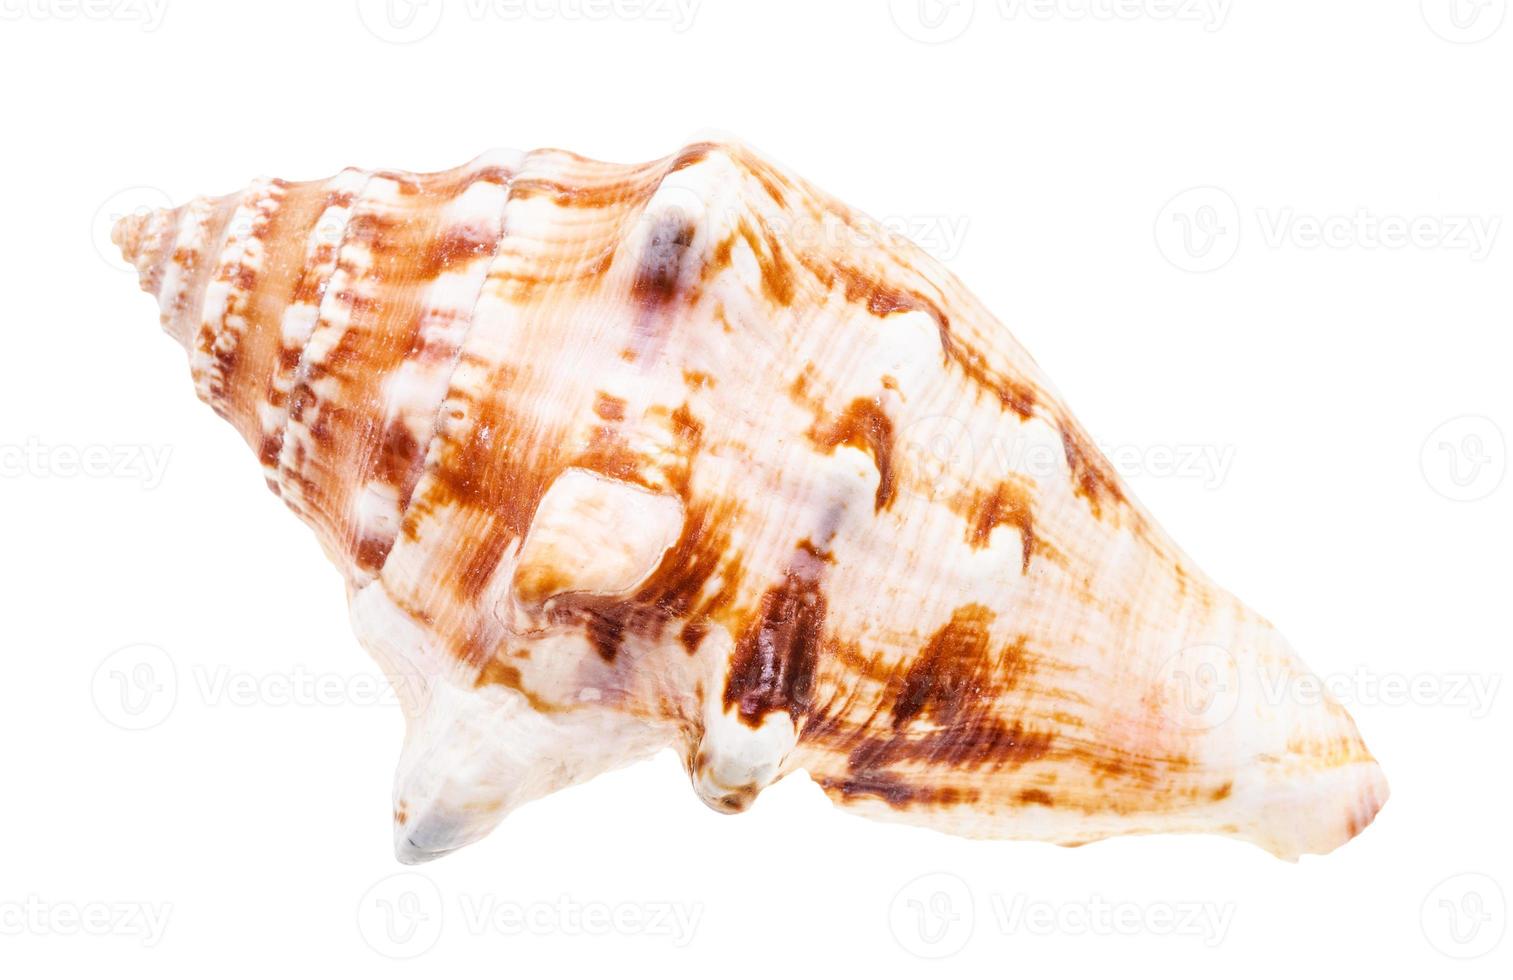 concha de molusco do mar isolada em branco foto